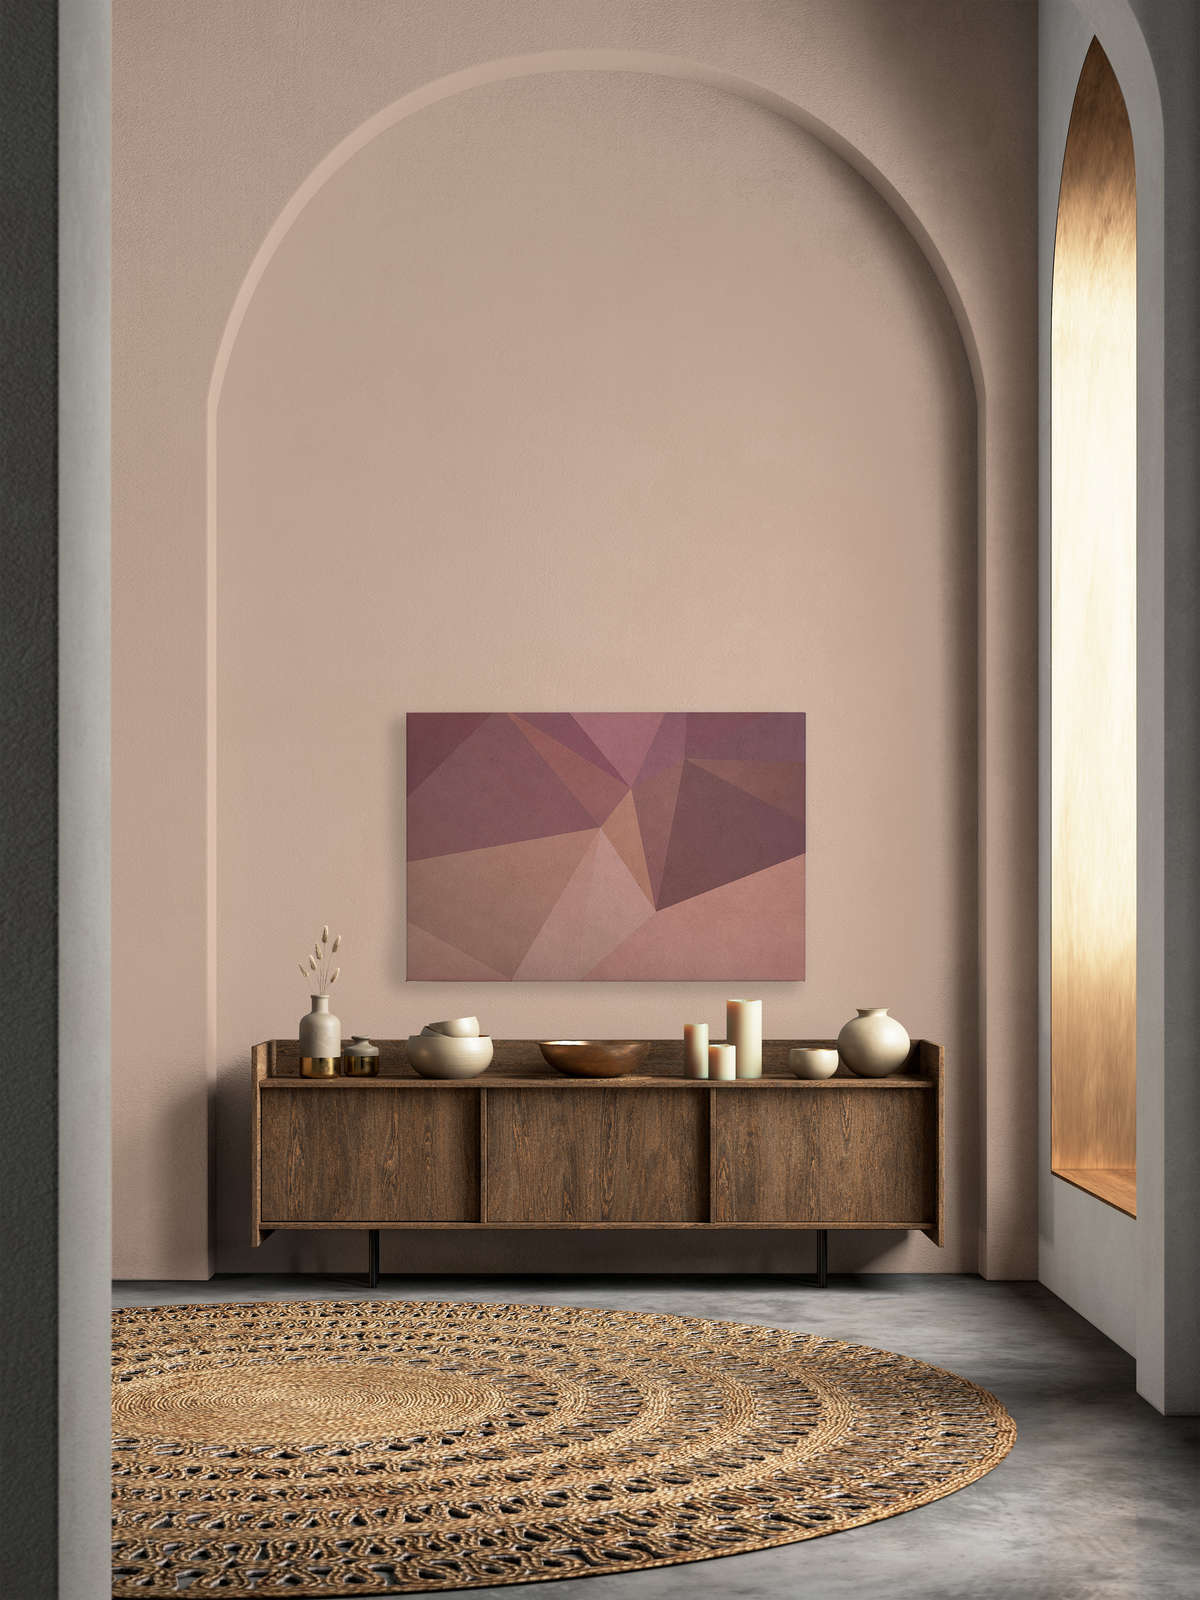             Tableau toile 3D optique géométrique | orange, violet - 1,20 m x 0,80 m
        